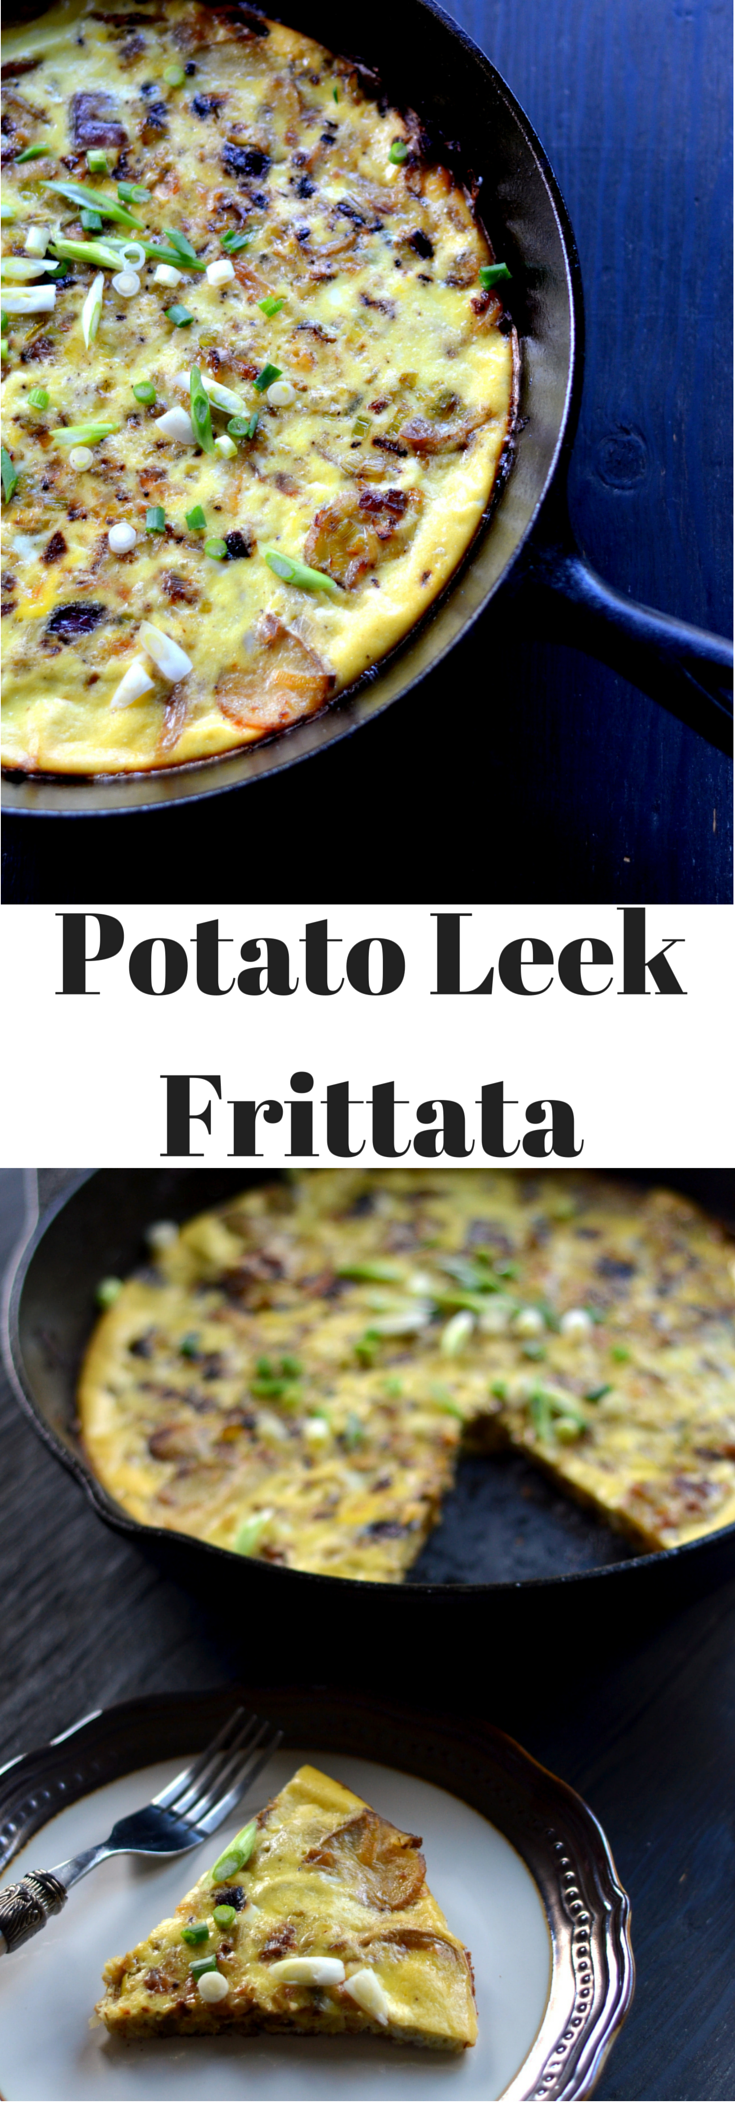 Potato Leek Frittata - A Brunch Recipe - Cooking Curries  (2)